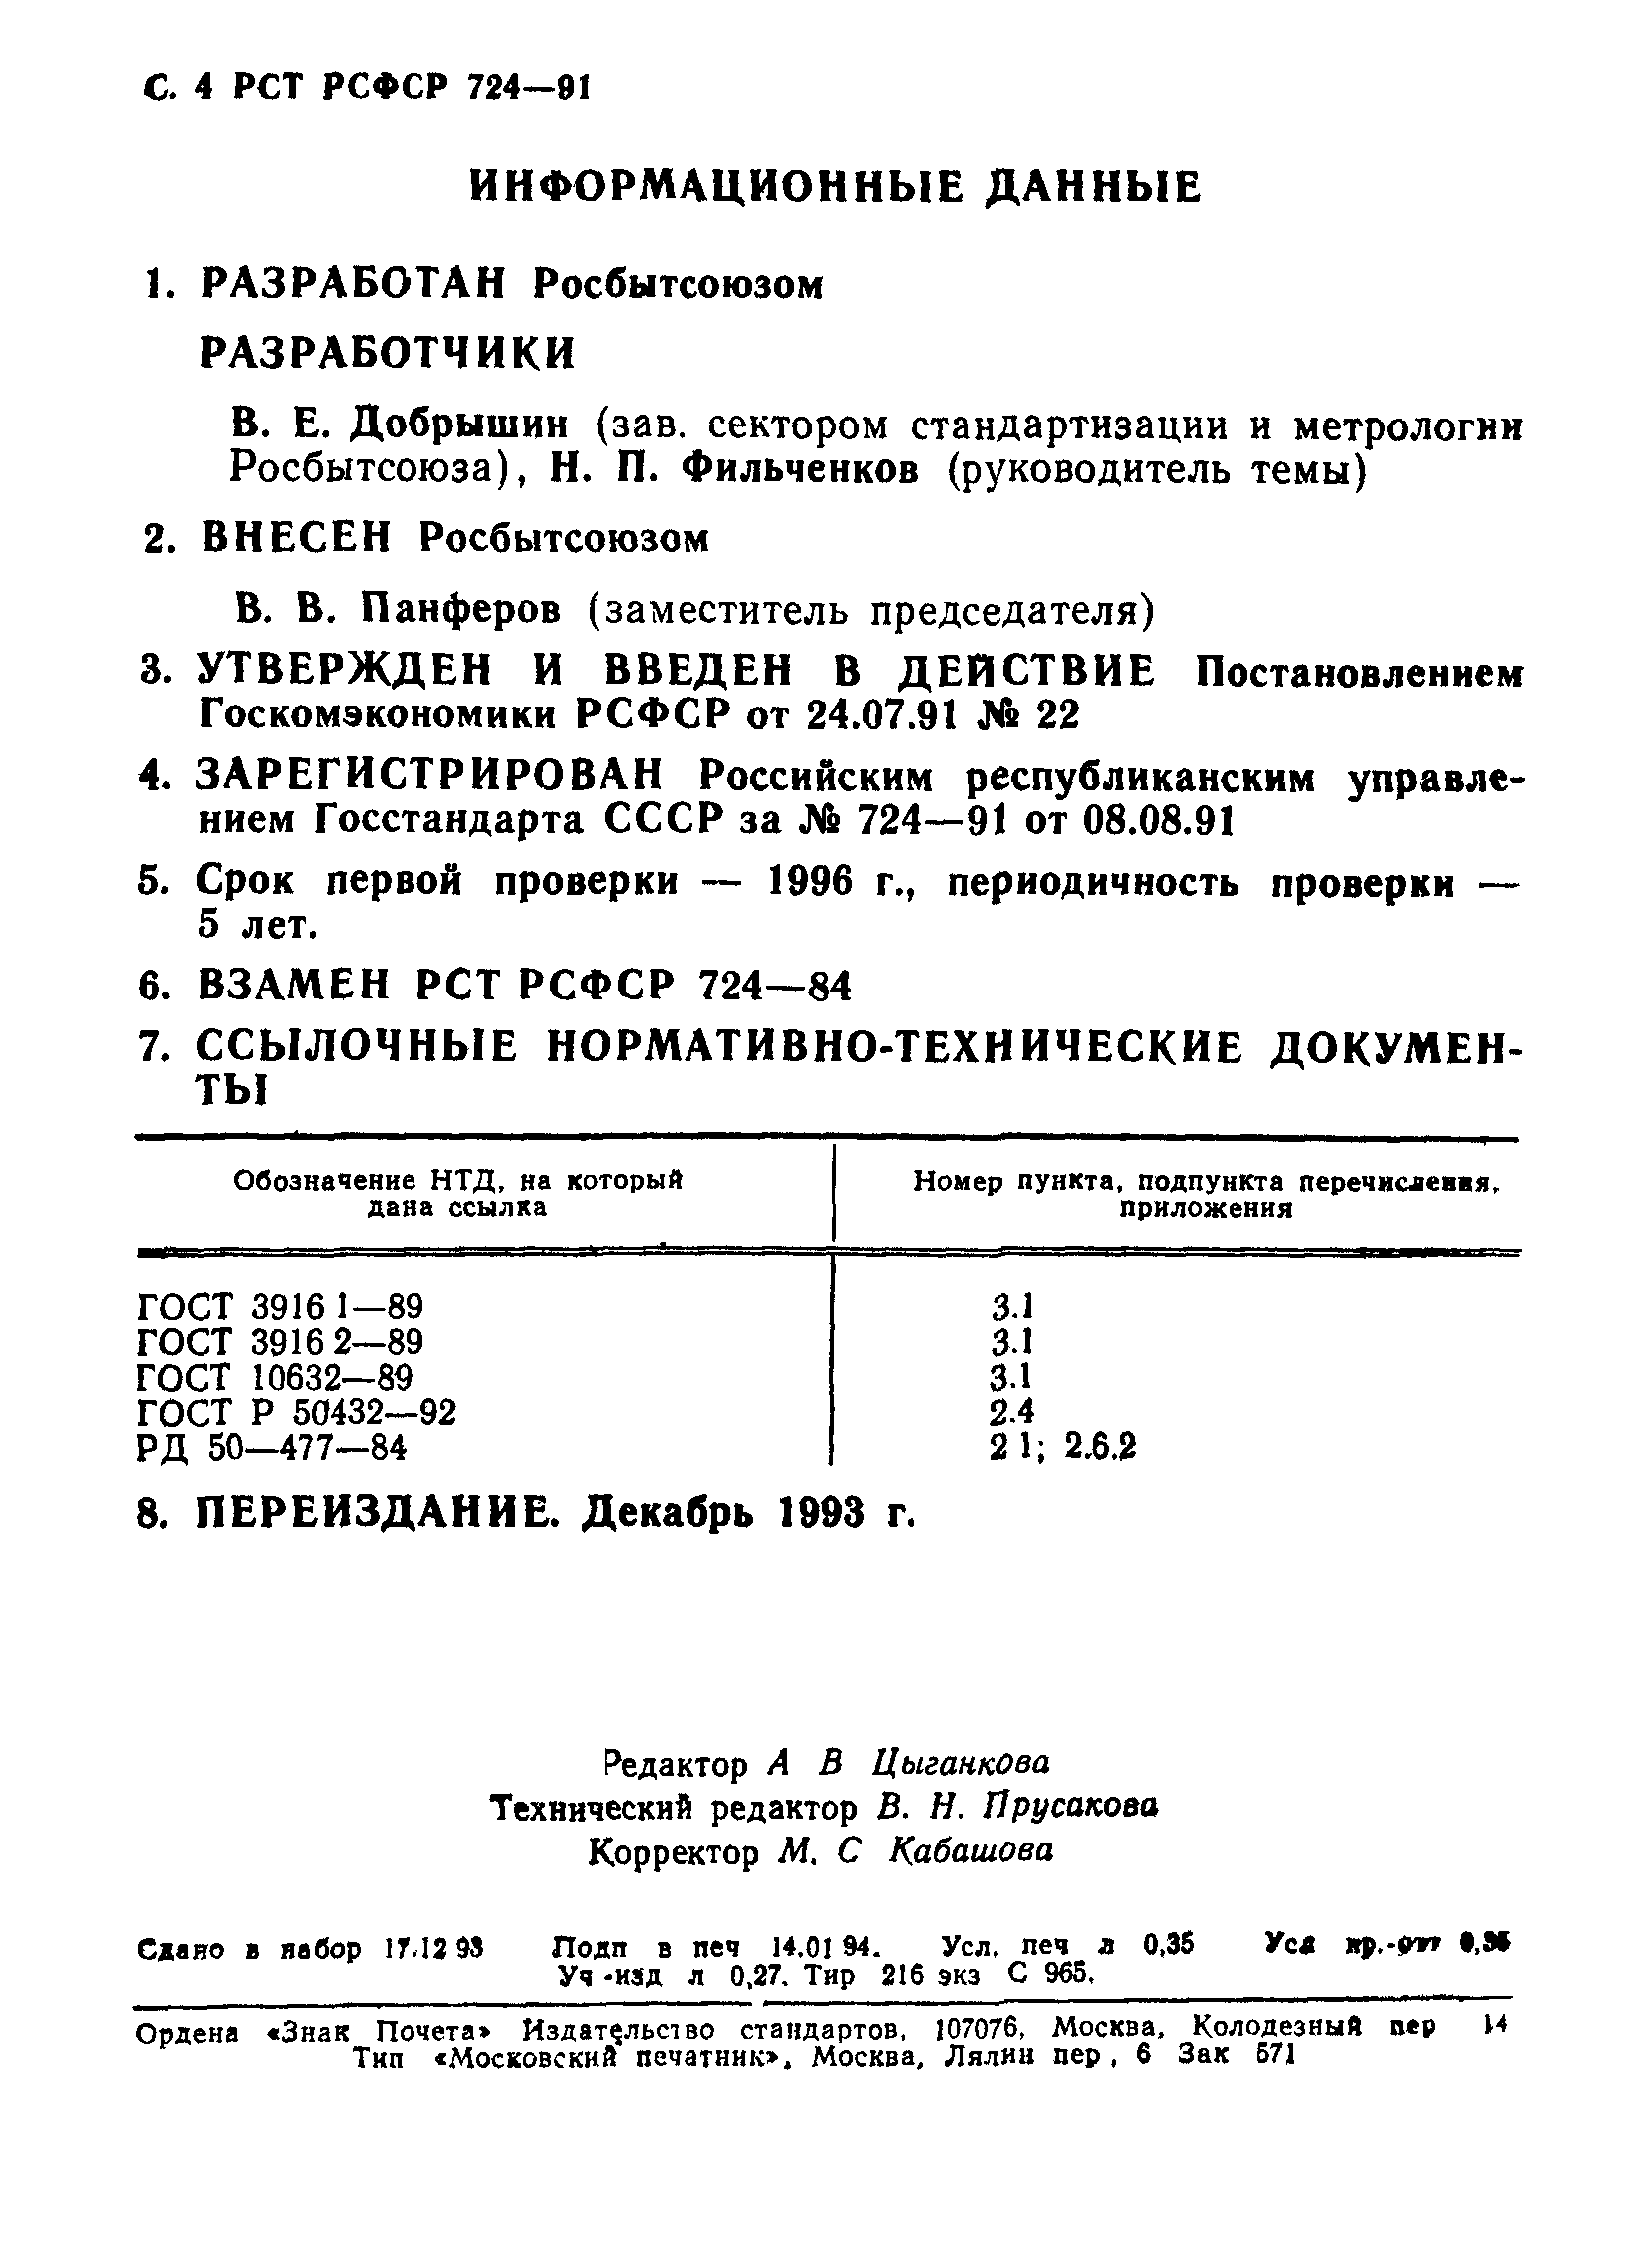 РСТ РСФСР 724-91